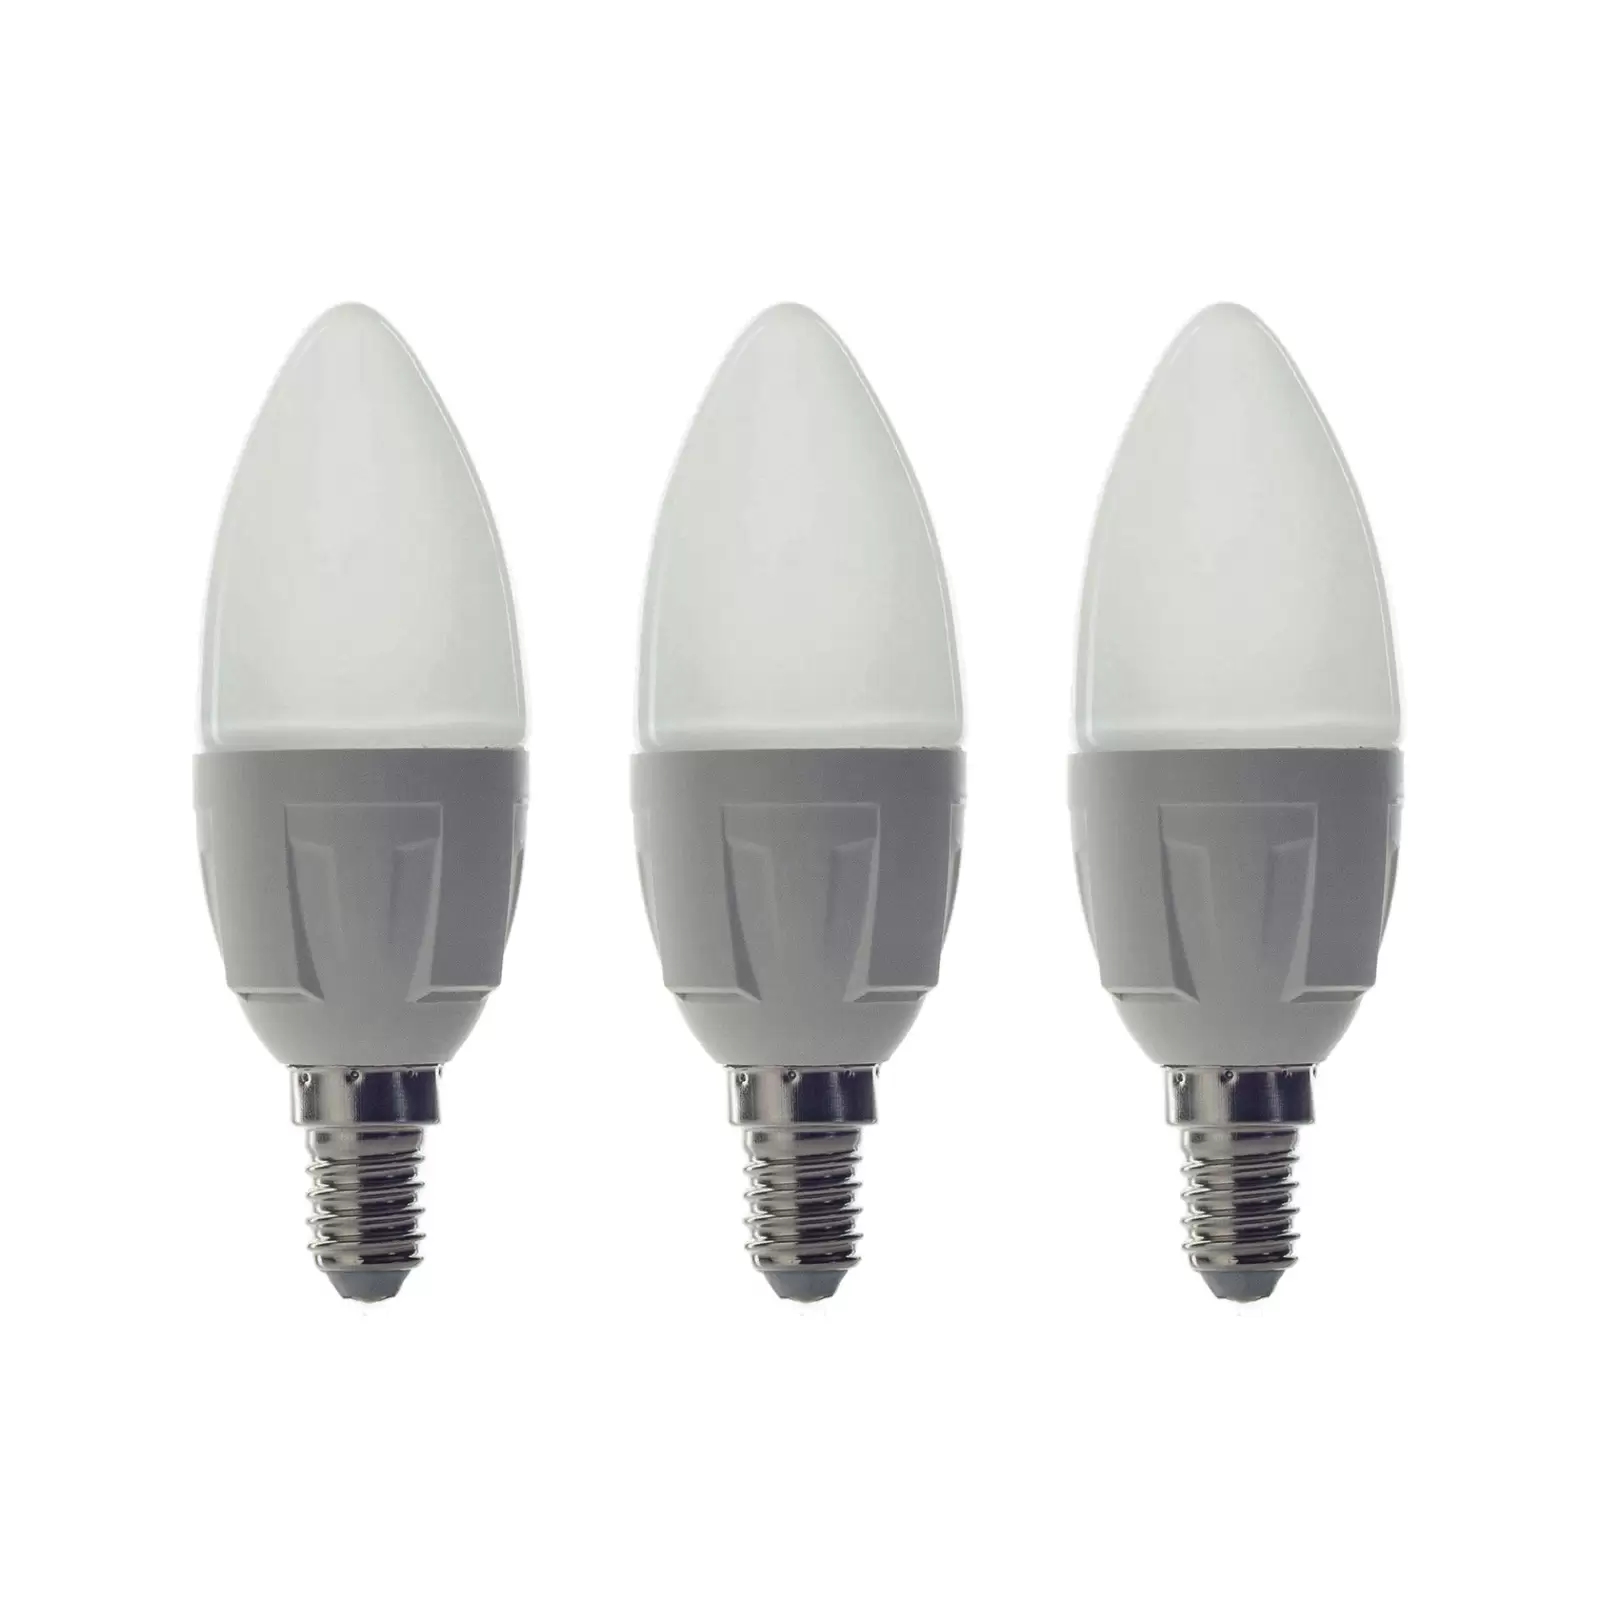 Arcchio ampoule tubulaire LED E14 4,5W 3 000 K x2